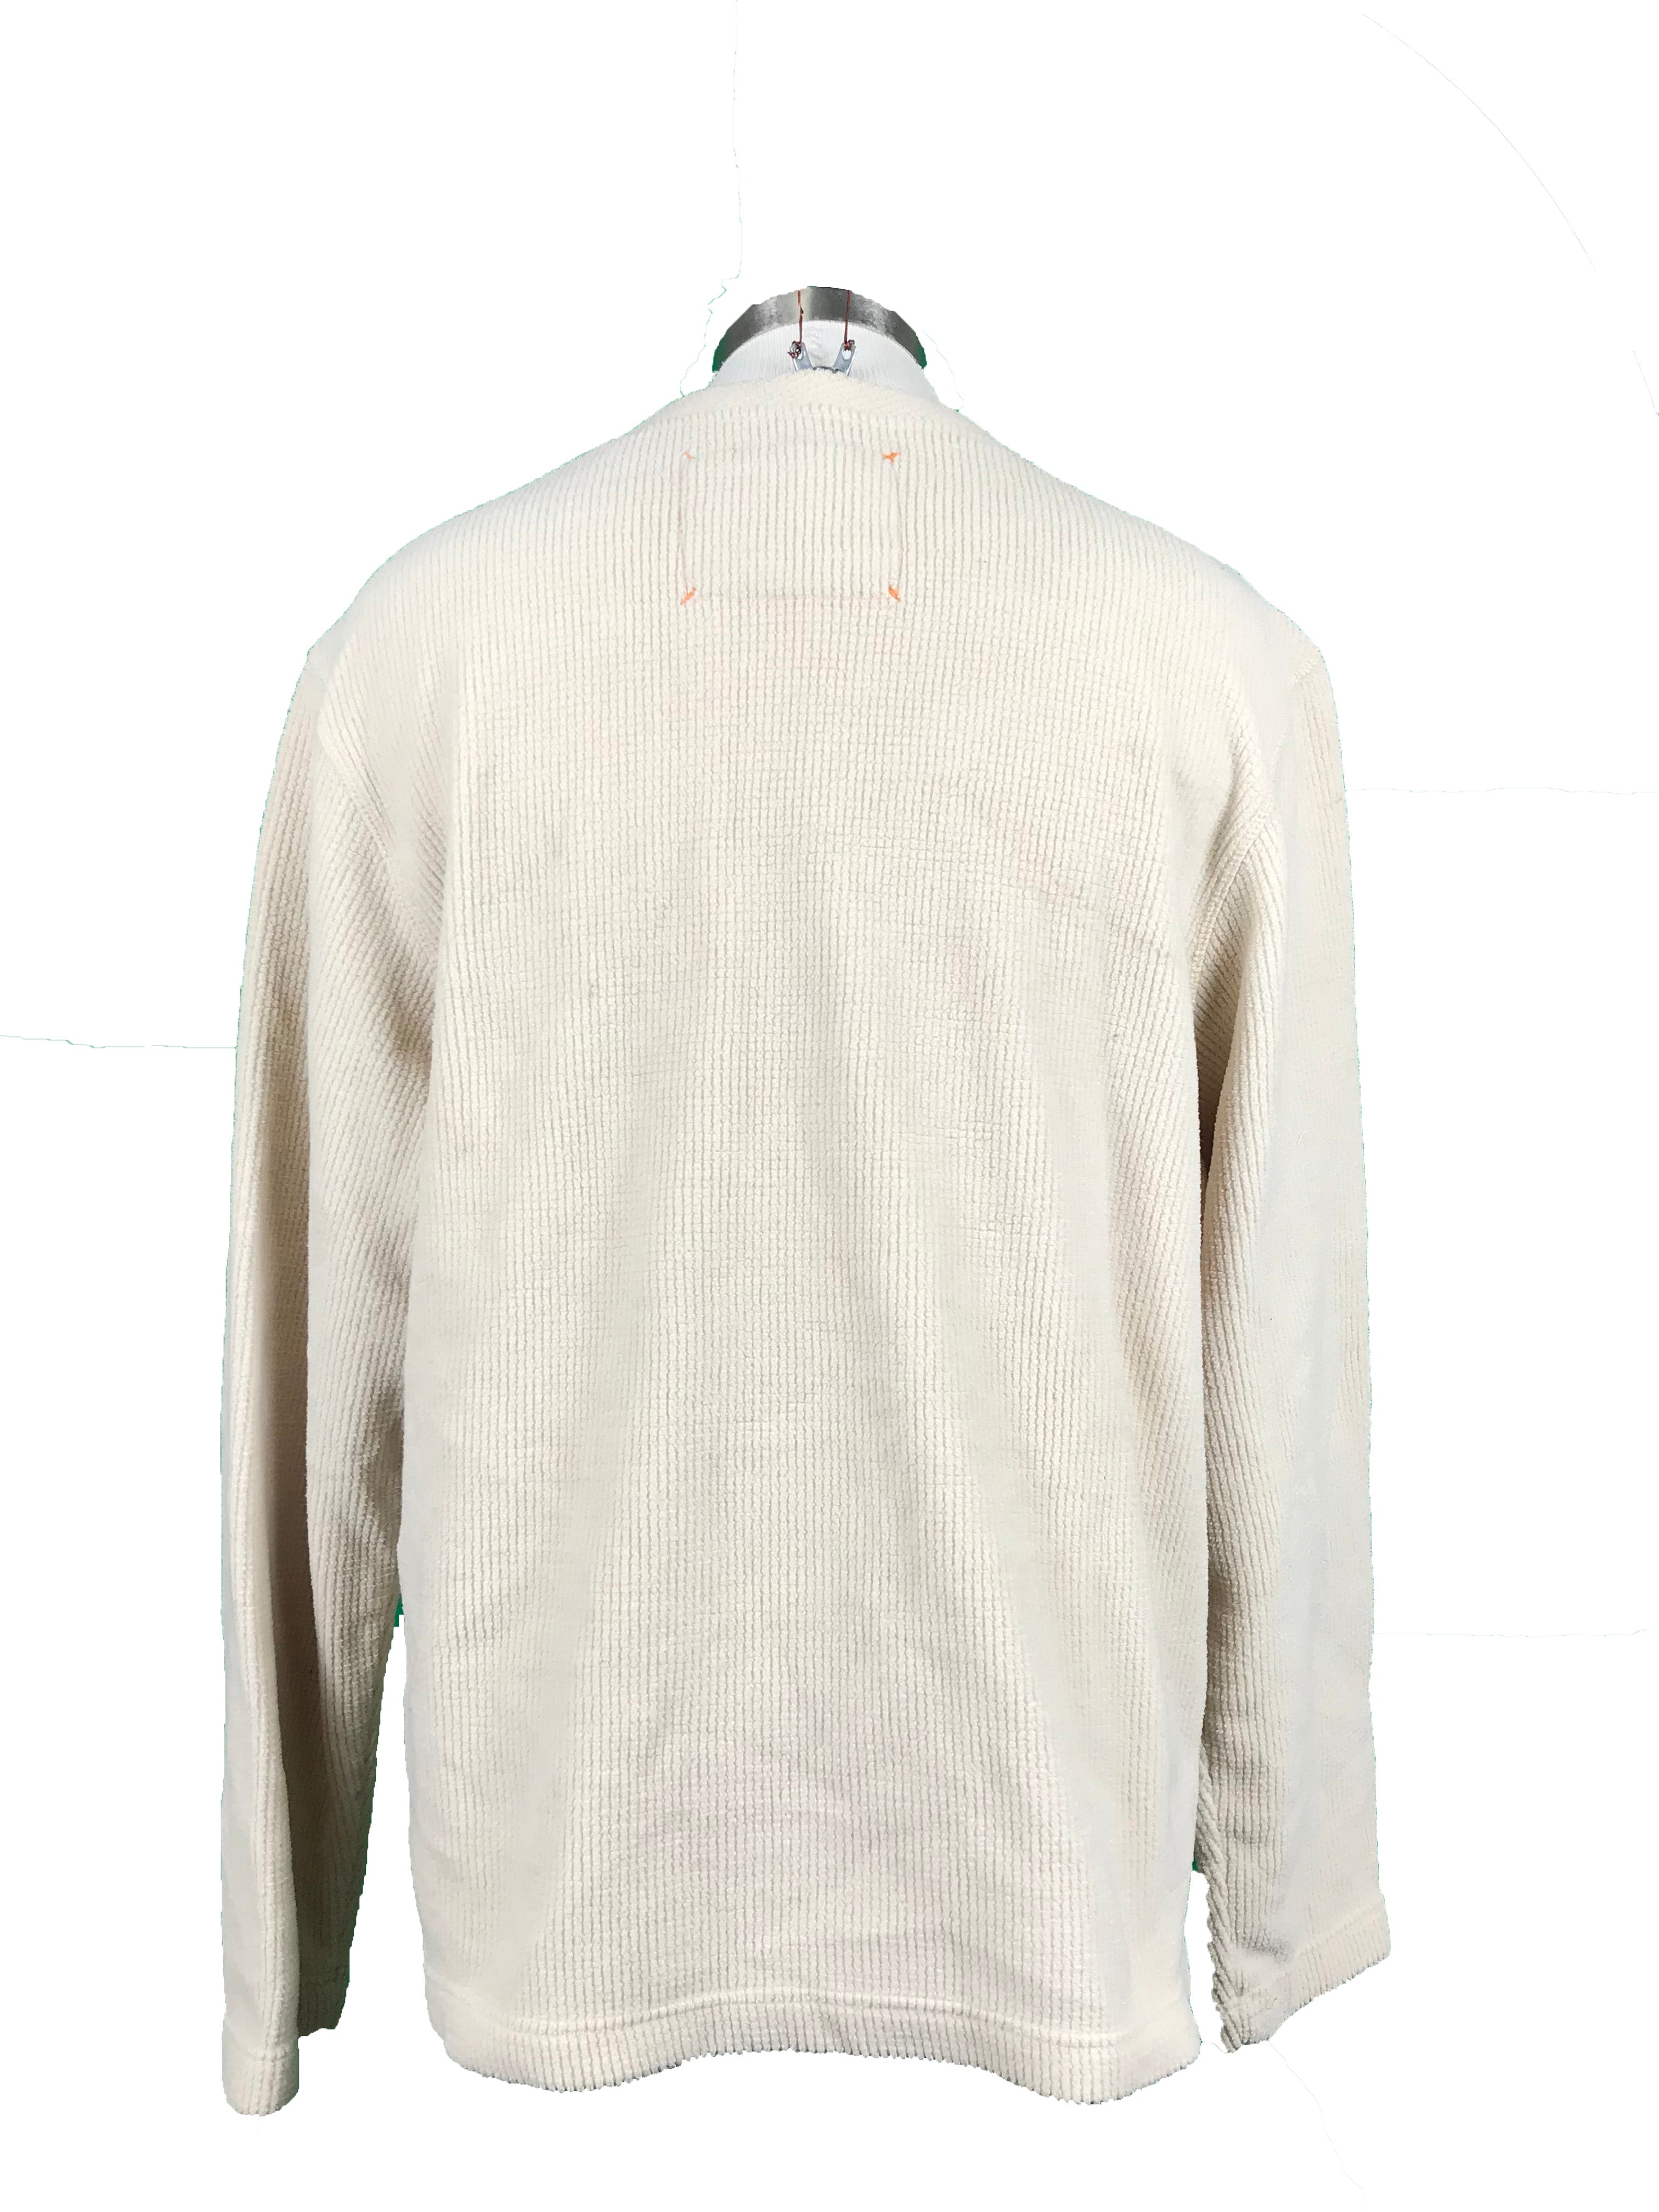 Timberland Tan Sweater Men's Size XL